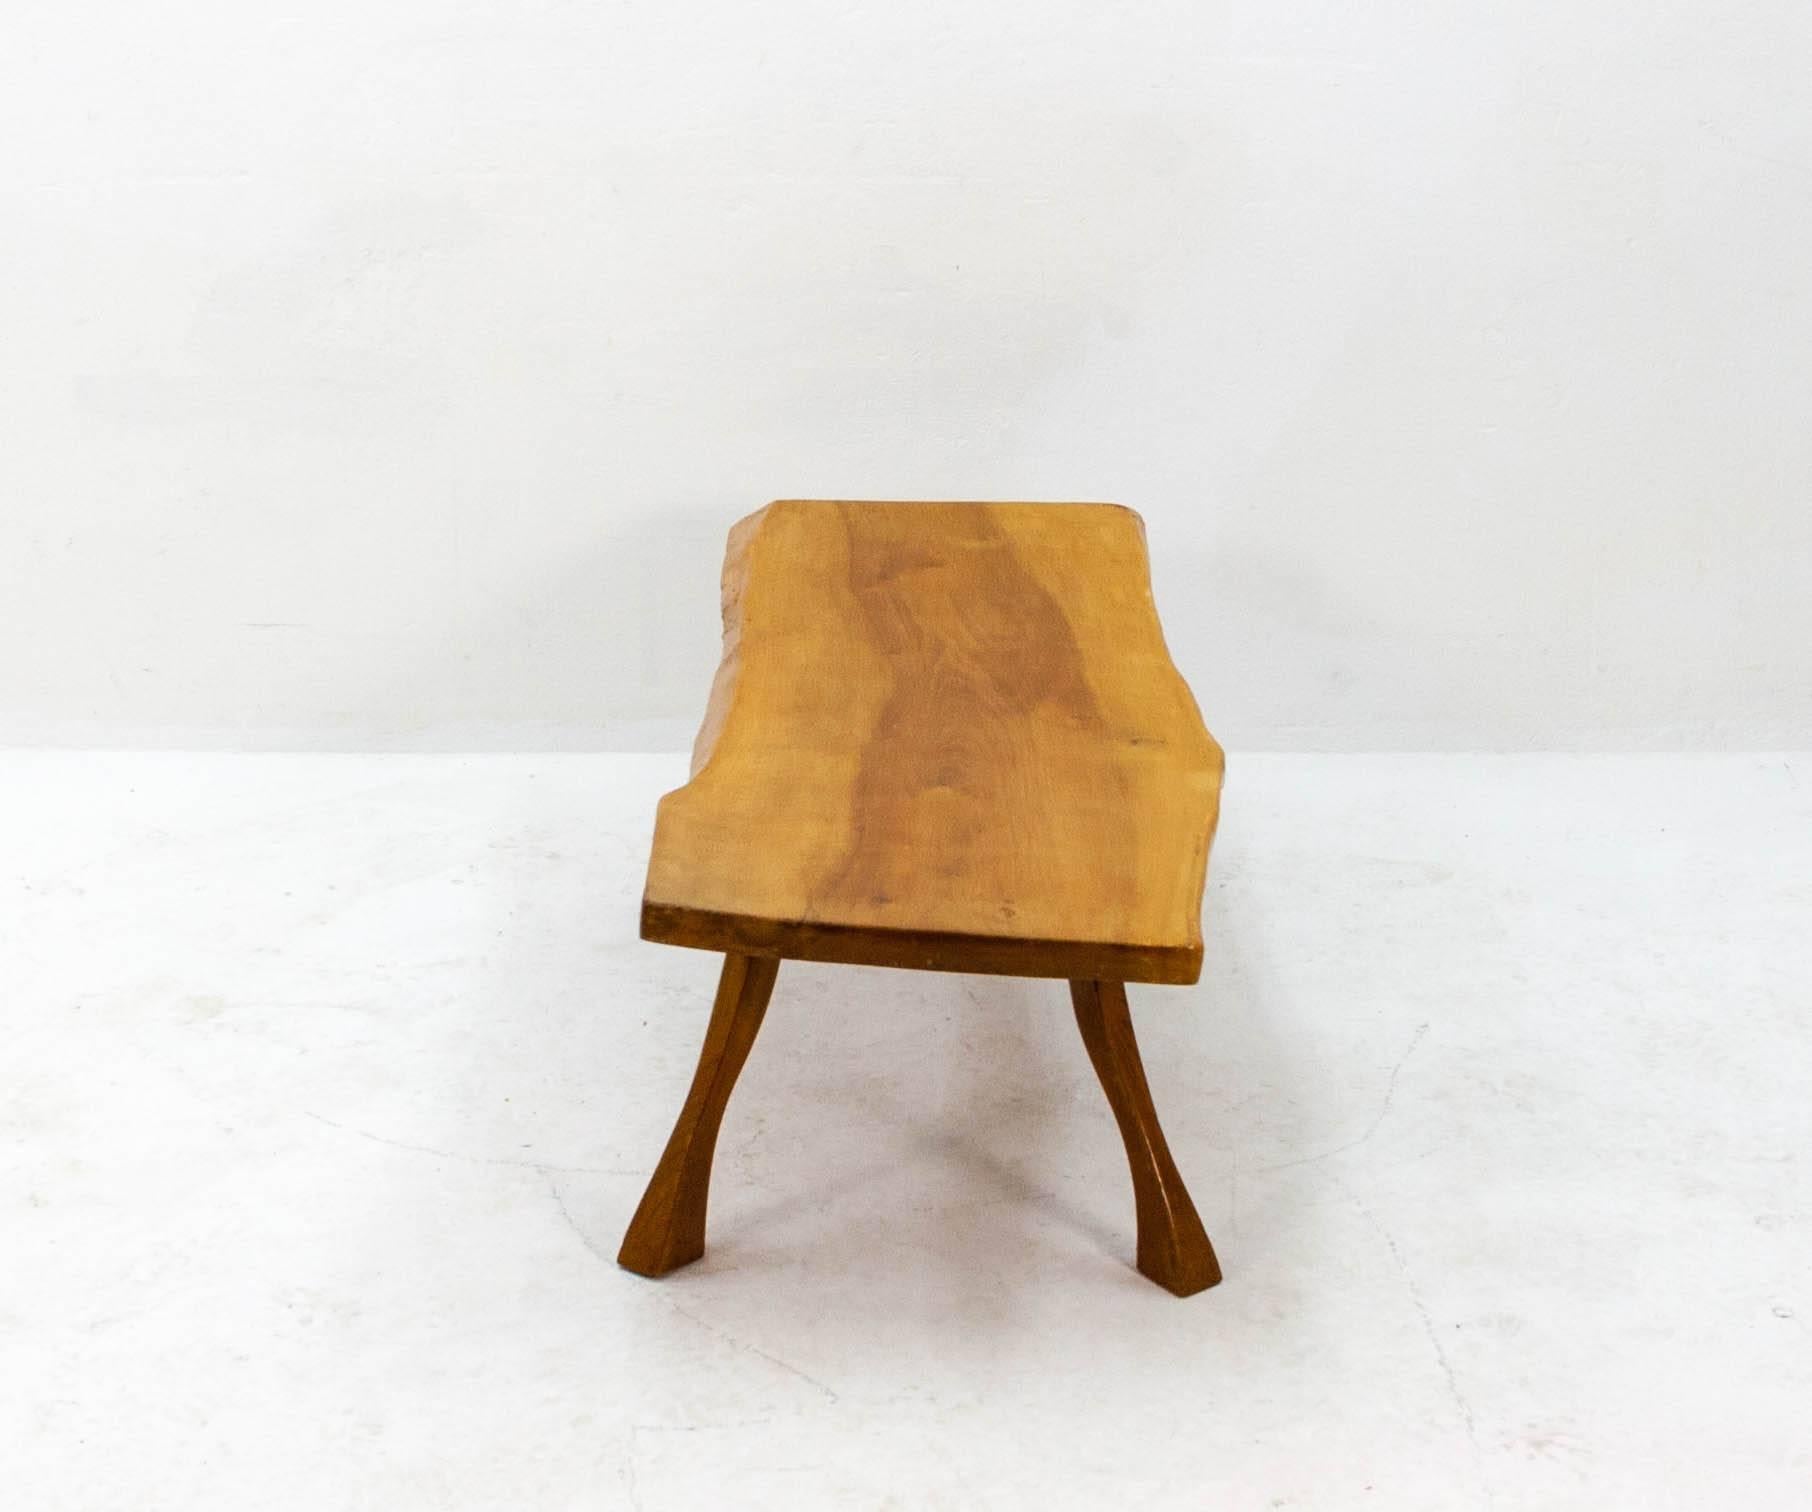 Table basse en forme de tronc d'arbre des années 1960, construction solide et finition de qualité.